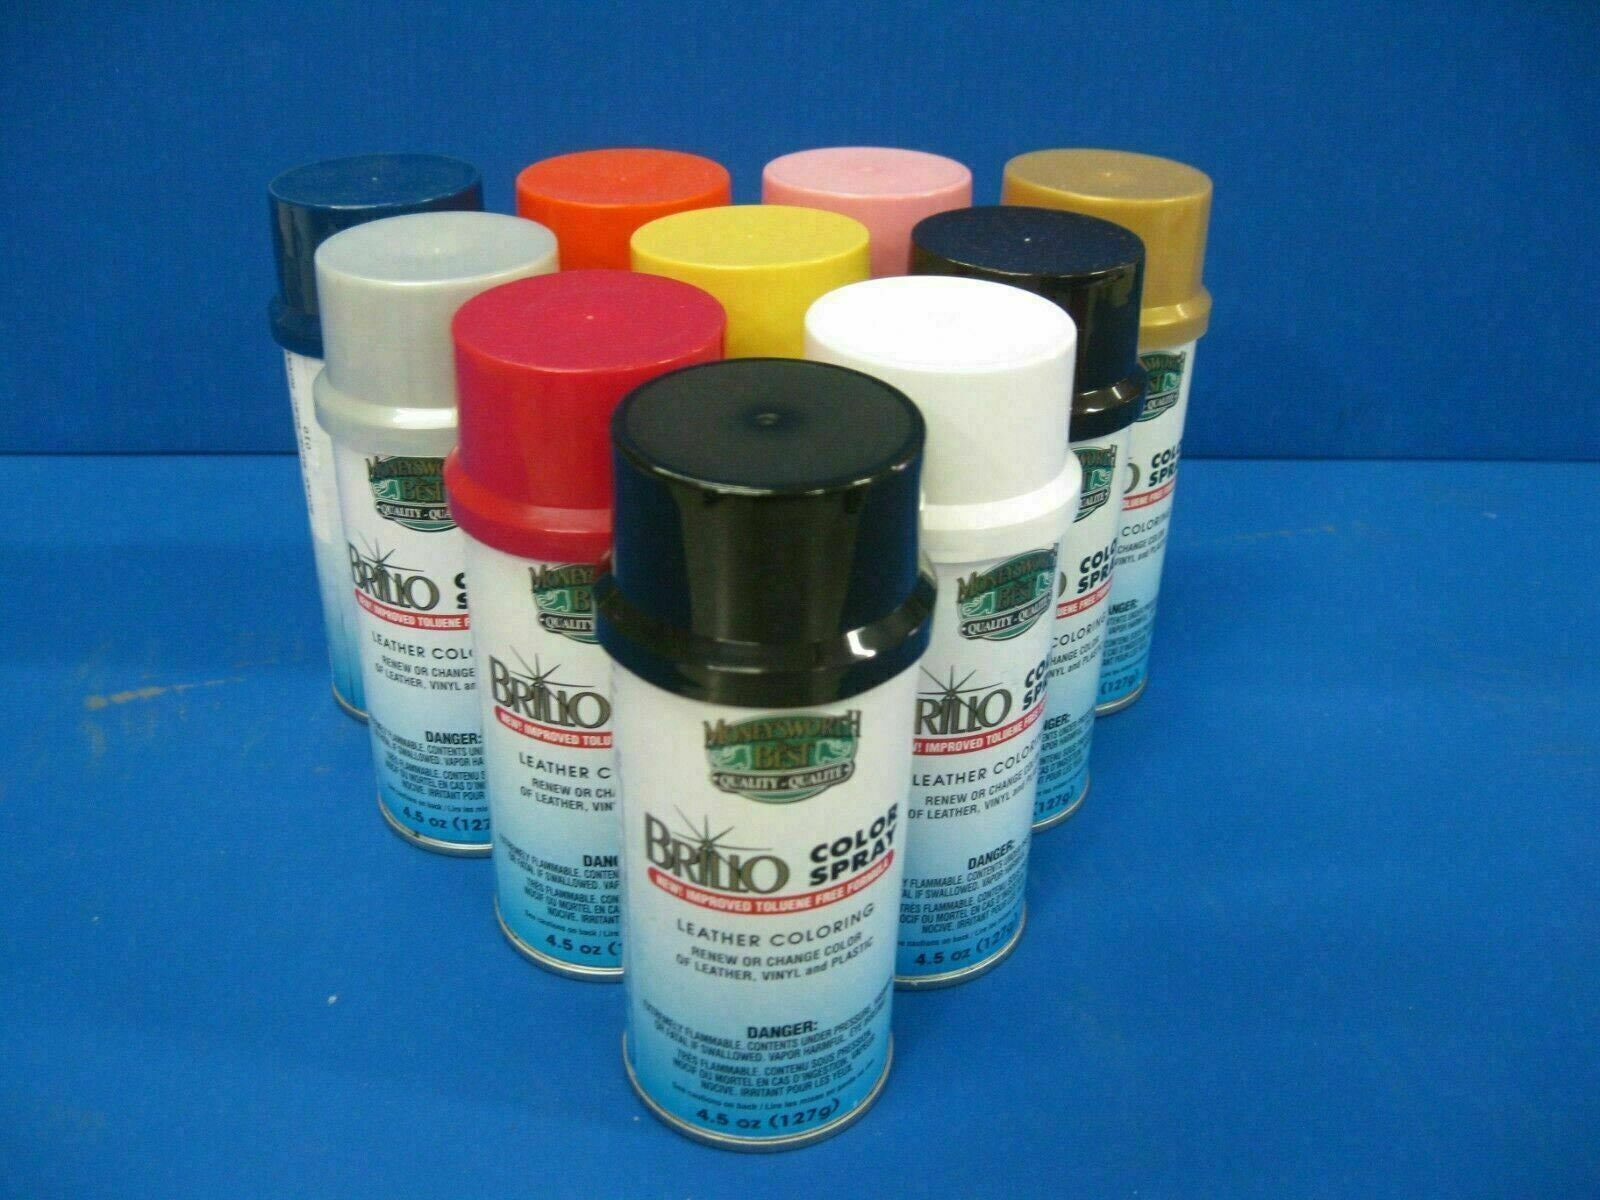 Brillo Color Spray - 4.5 oz